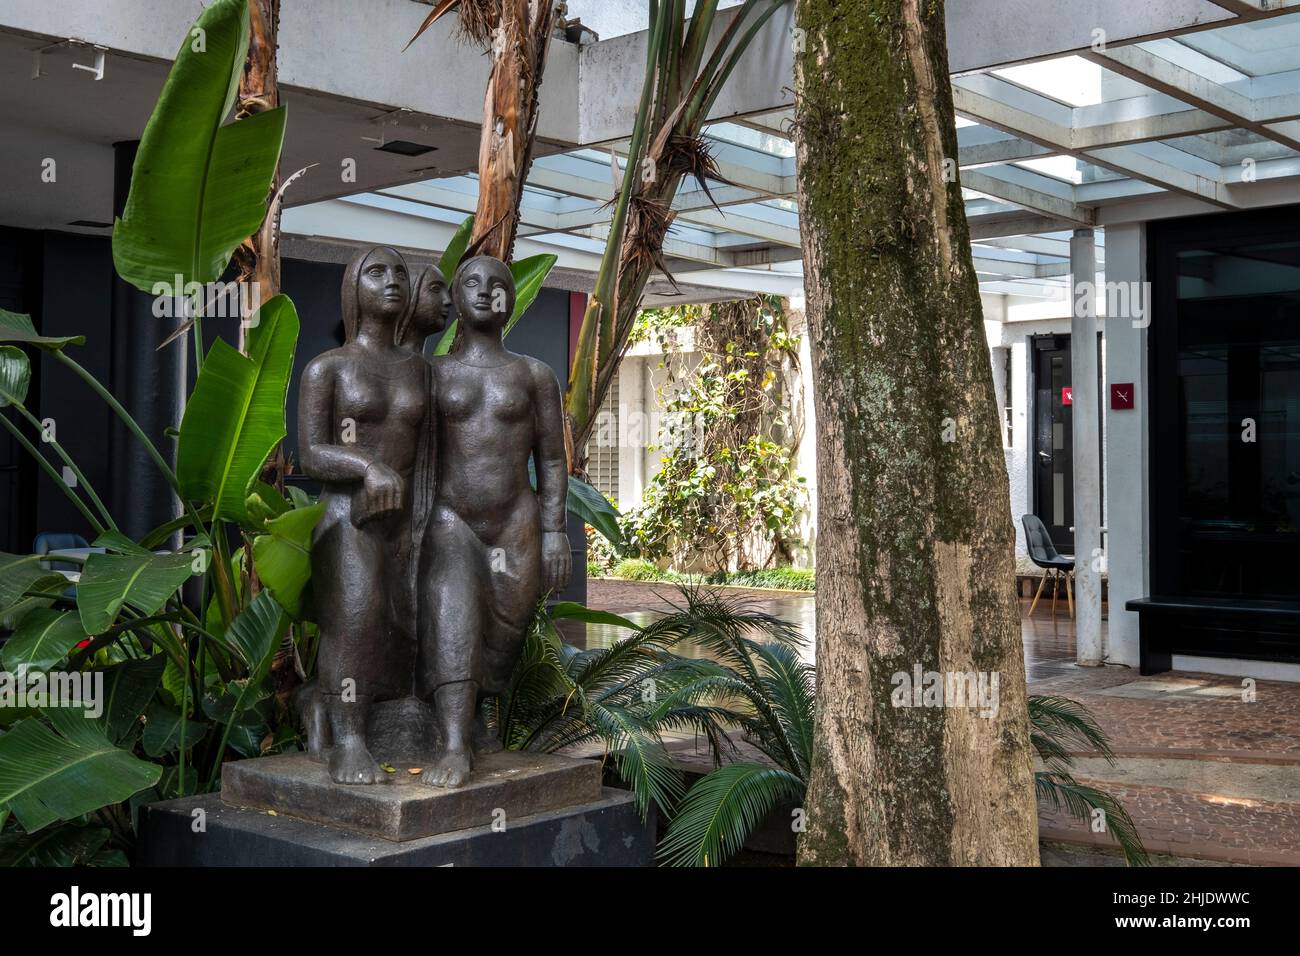 Escultura Tres Jornos de Lasar Segall, en el jardín del Museo Lasar Segall (Museu Lasar Segall) arquitecto: Gregori Warchavchik, São Paulo, Brasil Foto de stock